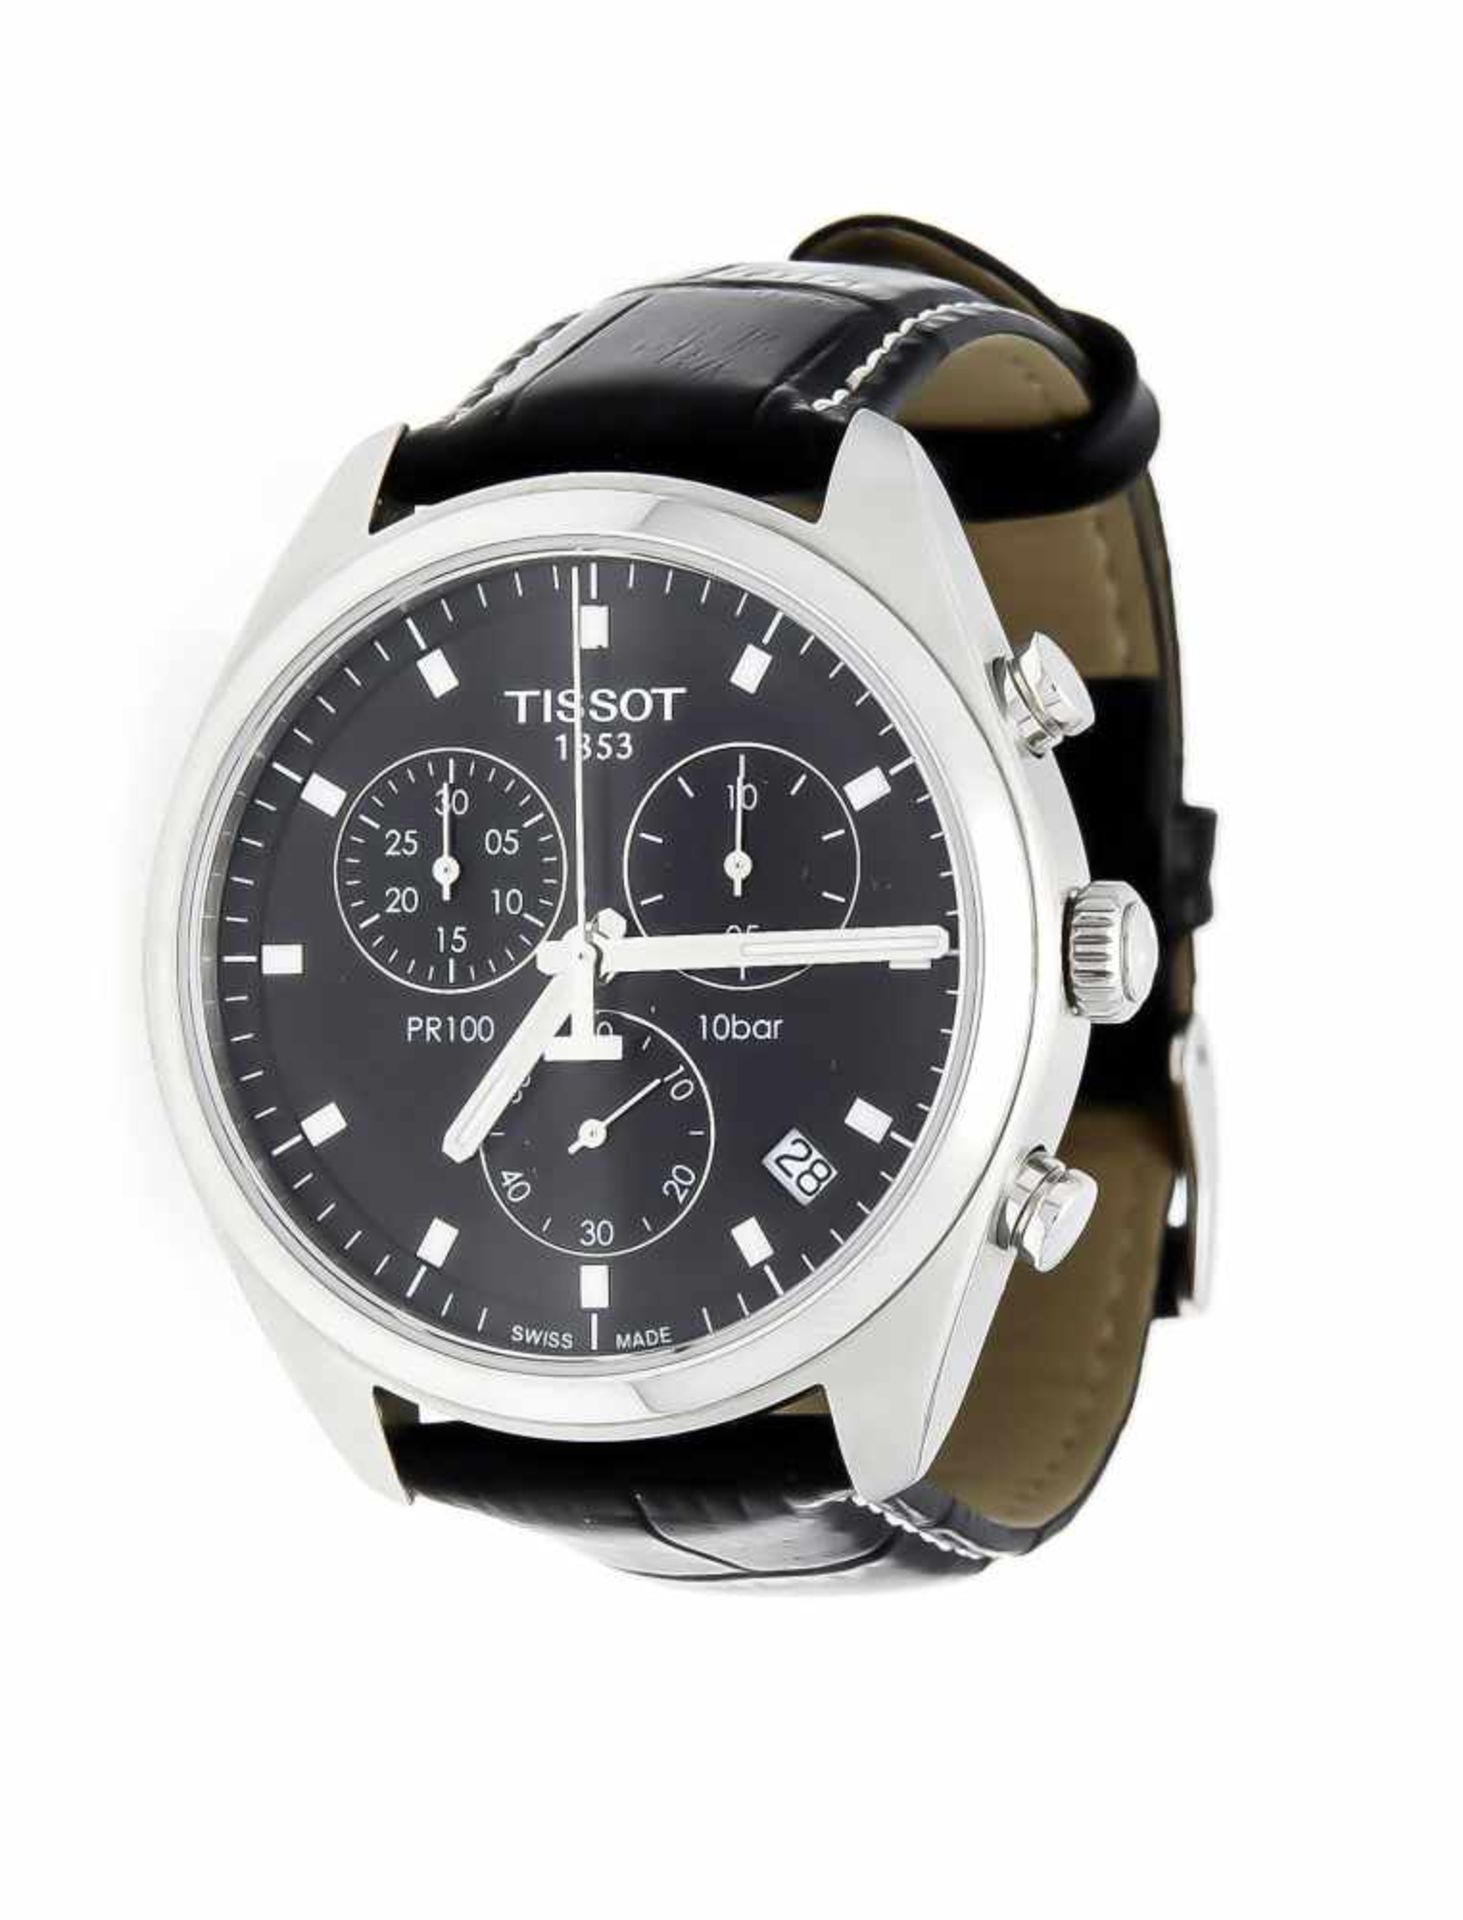 Tissot Herrenquarzchronograf PR100, Stahl mit schwarzem Lederband, mit Box und Papierenfullset, Ref.